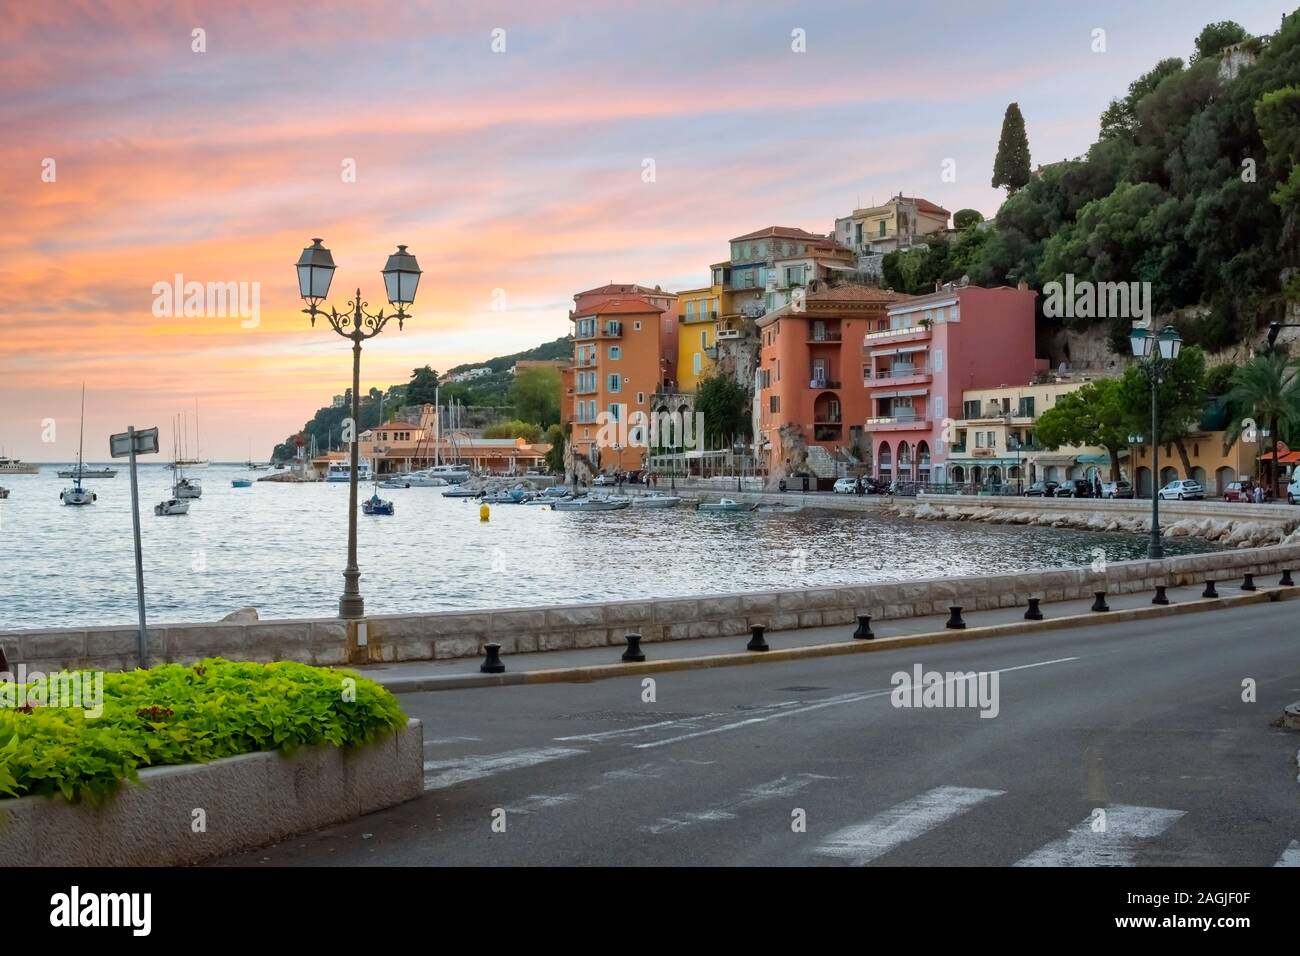 Un coucher de soleil colorés sur la Côte d'azur à la ville balnéaire de Villefranche sur Mer, France, sur la côte d'Azur. Banque D'Images